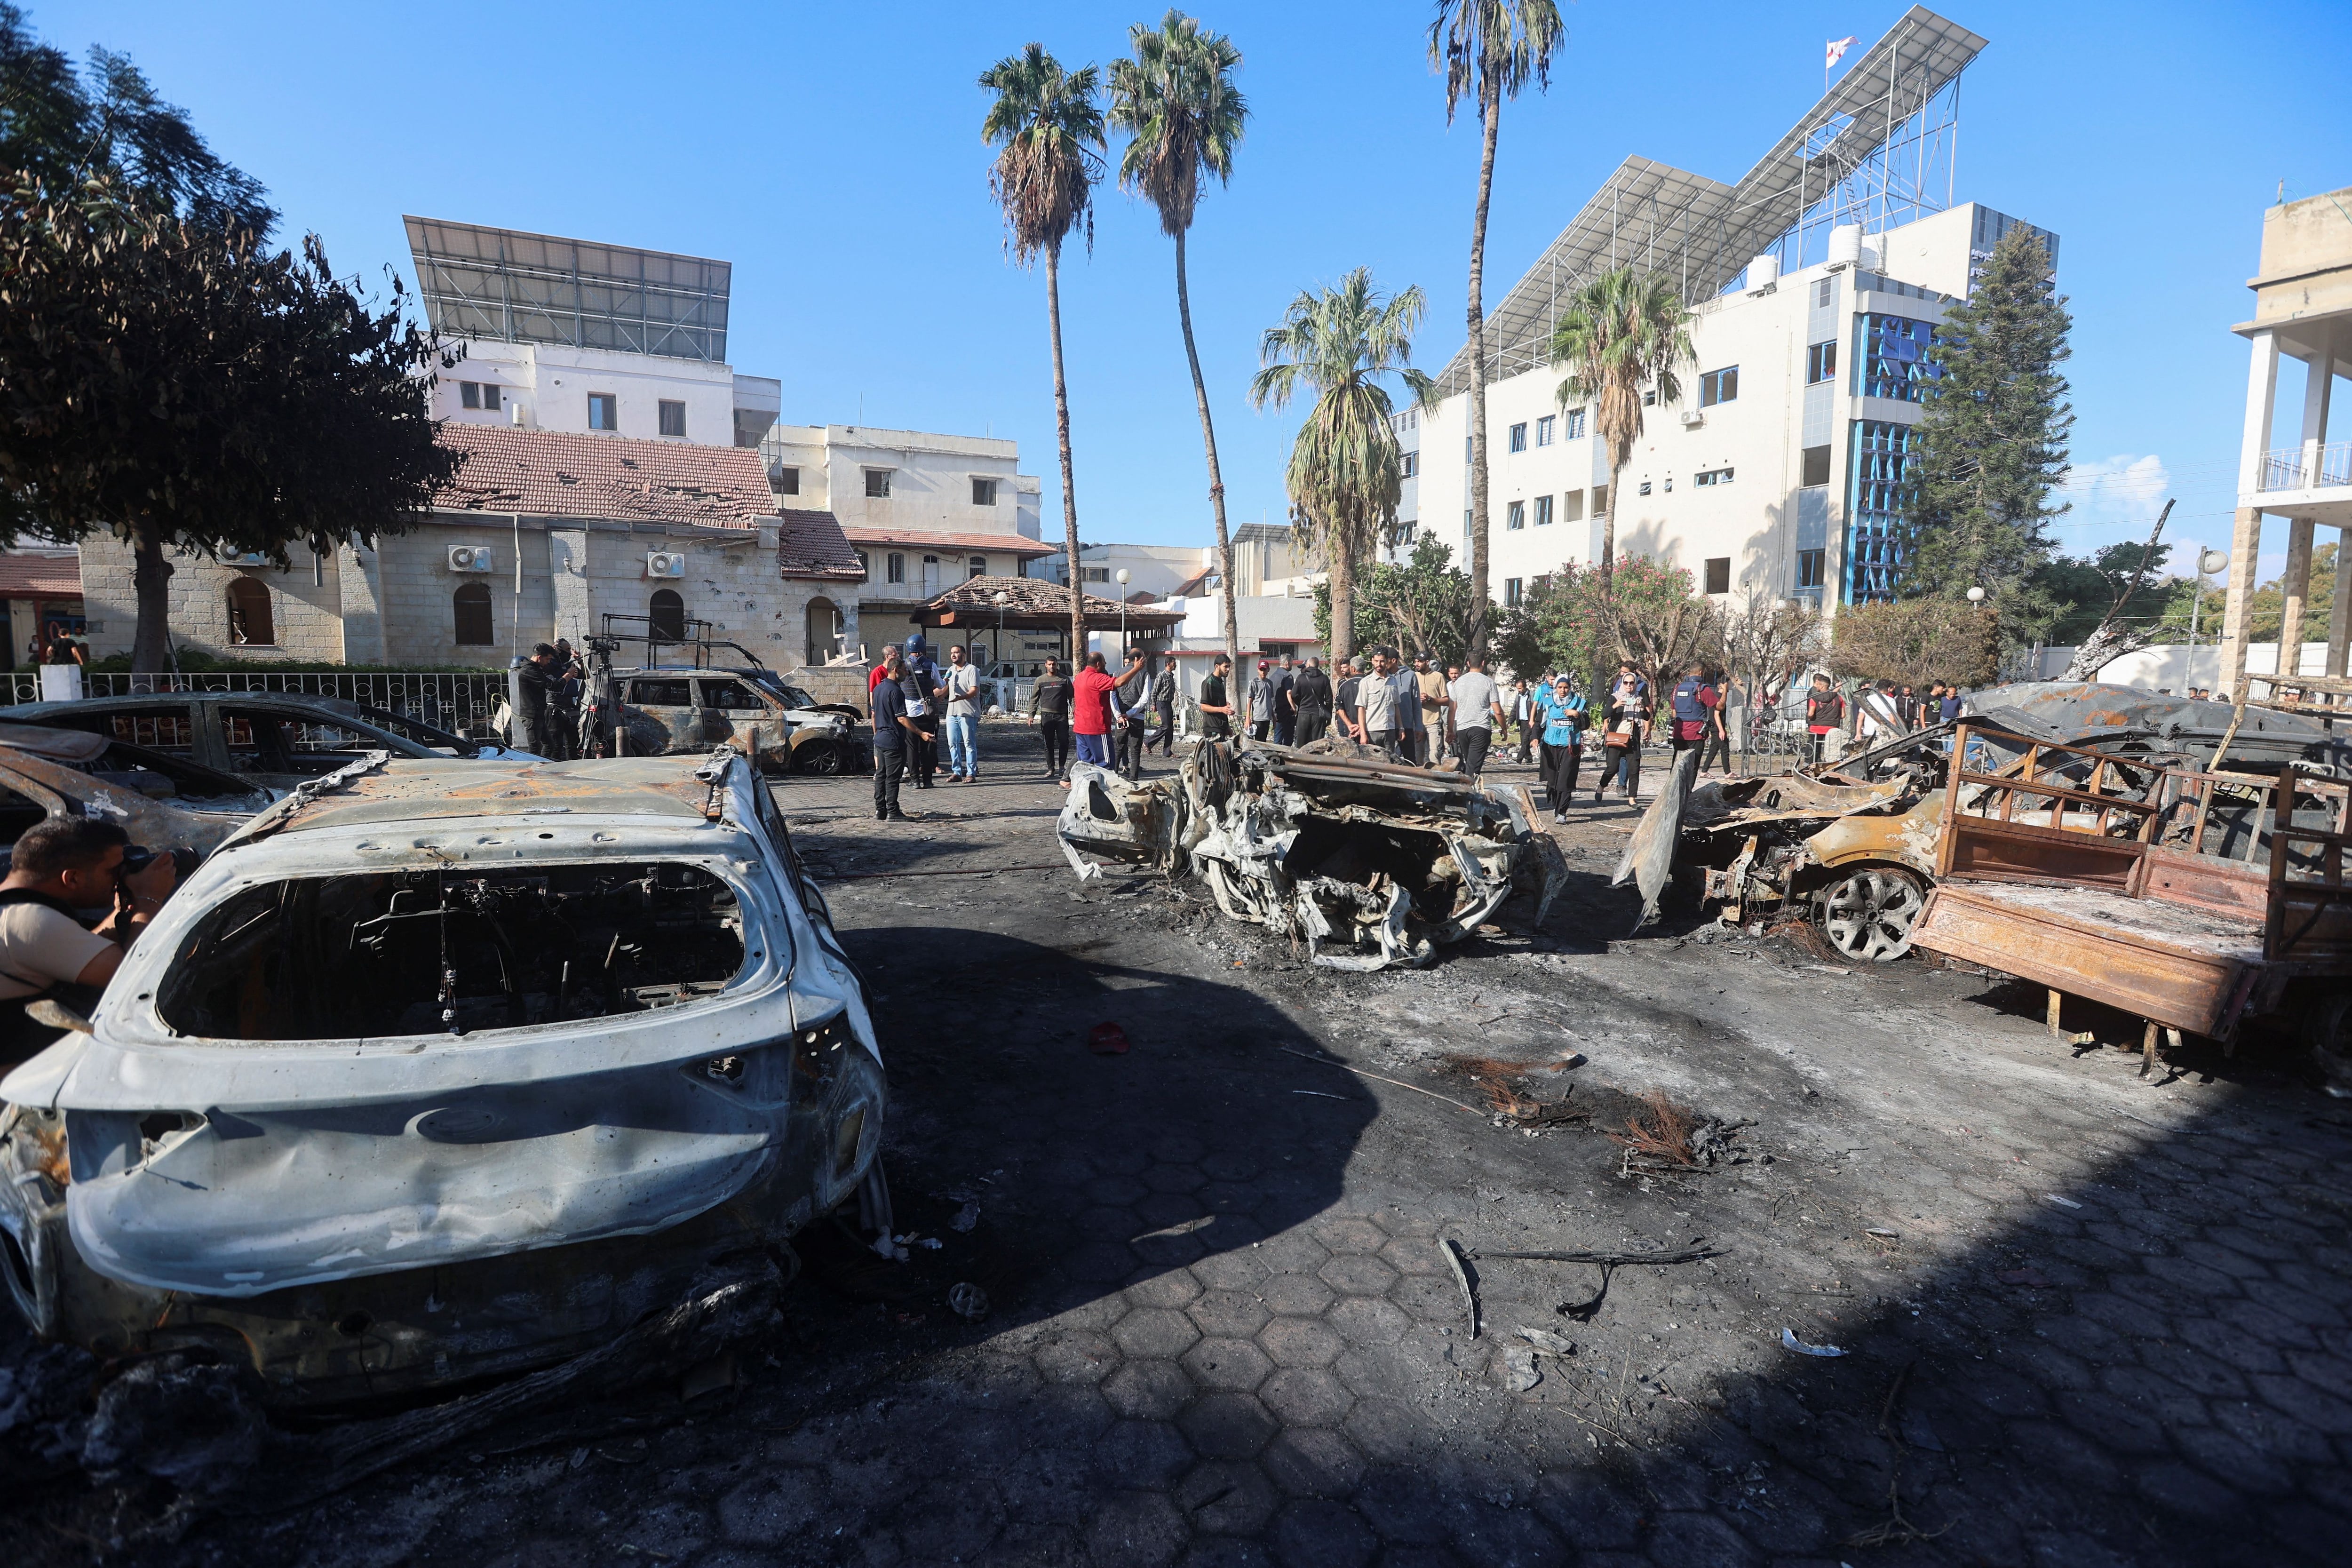 El cohete caído en el hospital pareció haber producido daños limitados, principalmente al estacionamiento del lugar (REUTERS/Ahmed Zakot)